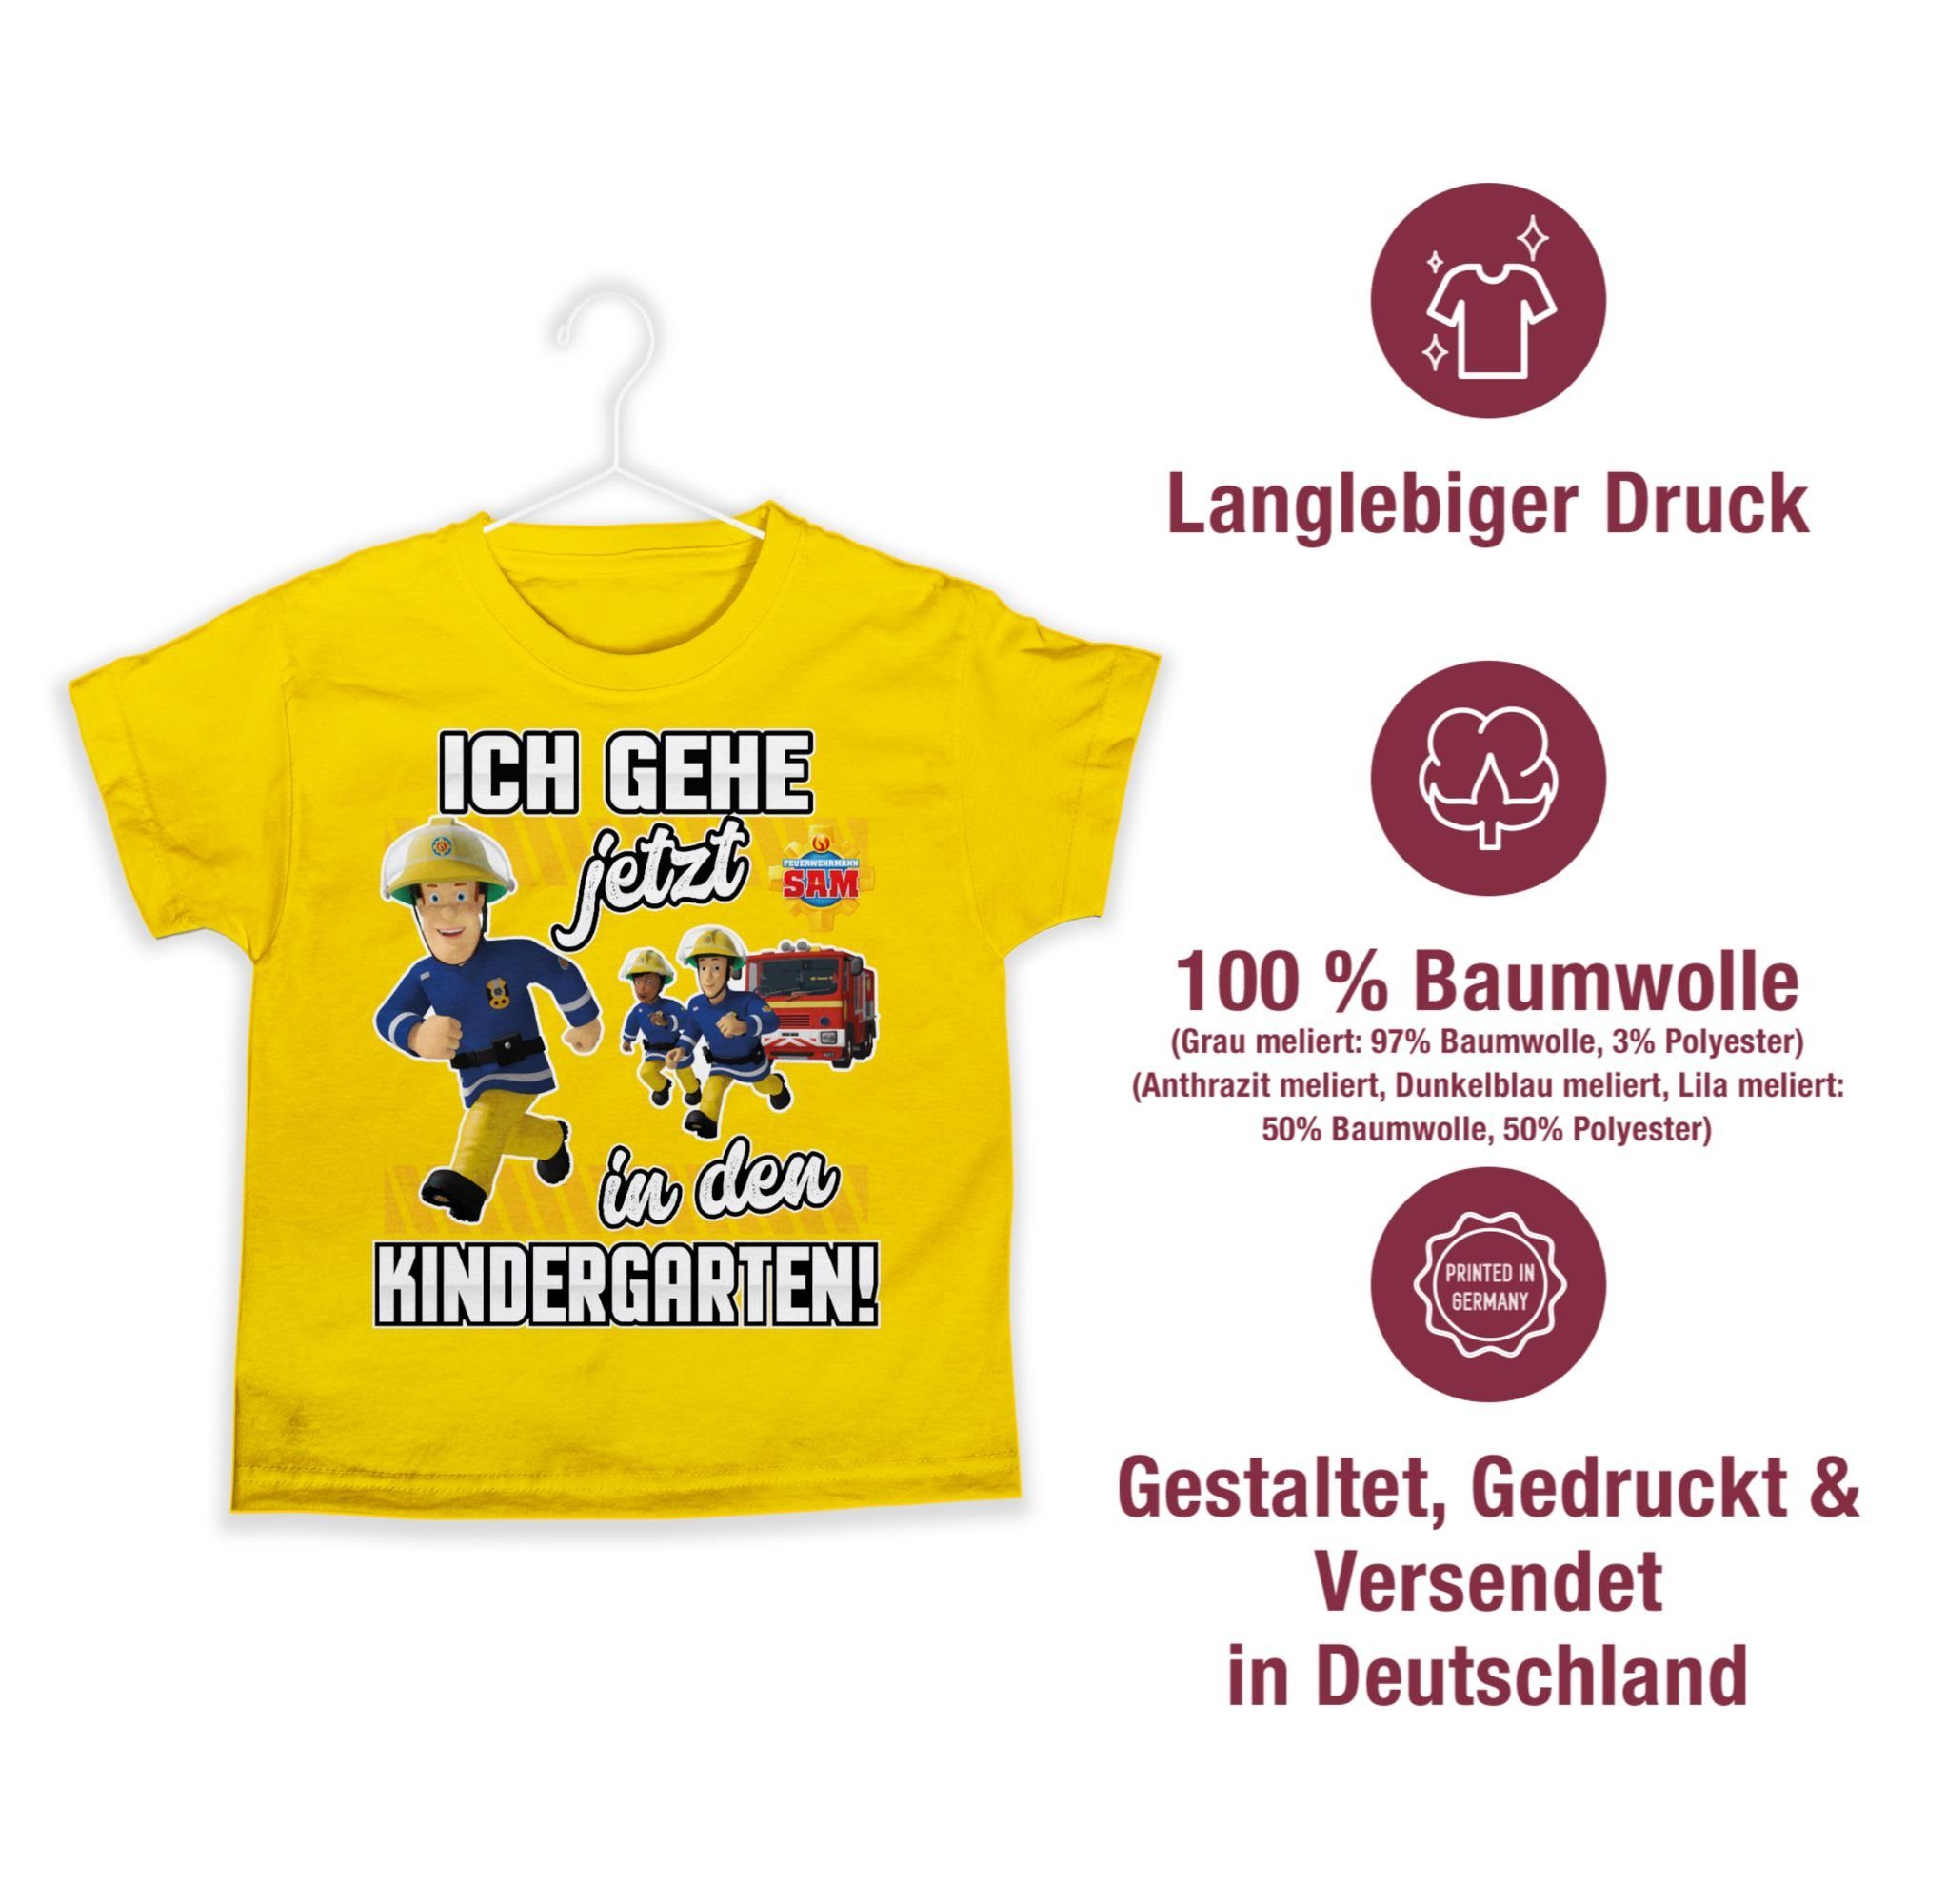 Shirtracer T-Shirt Ich Jungen Kindergarten! Gelb Feuerwehrmann in Sam jetzt gehe 02 den